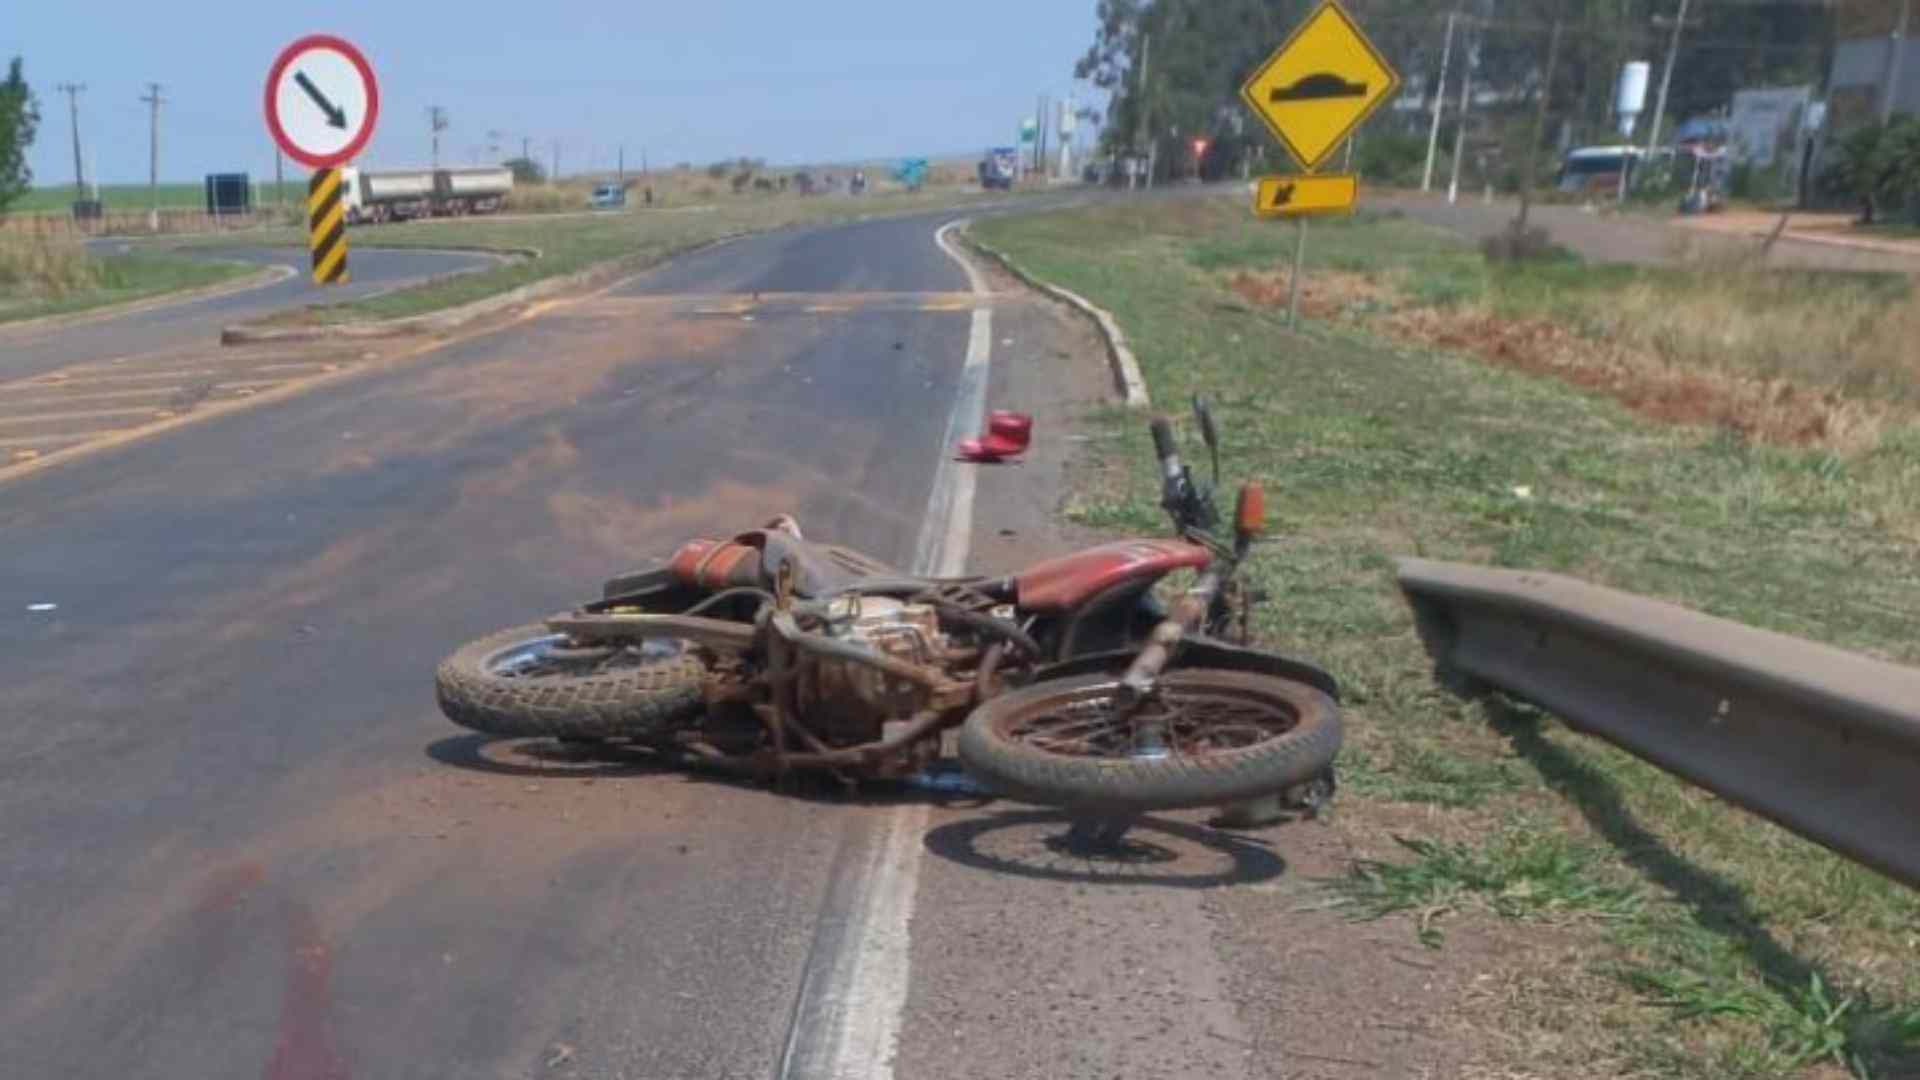 Sem capacete, motociclista cai na BR-163 após passar por rotatória e morre no hospital